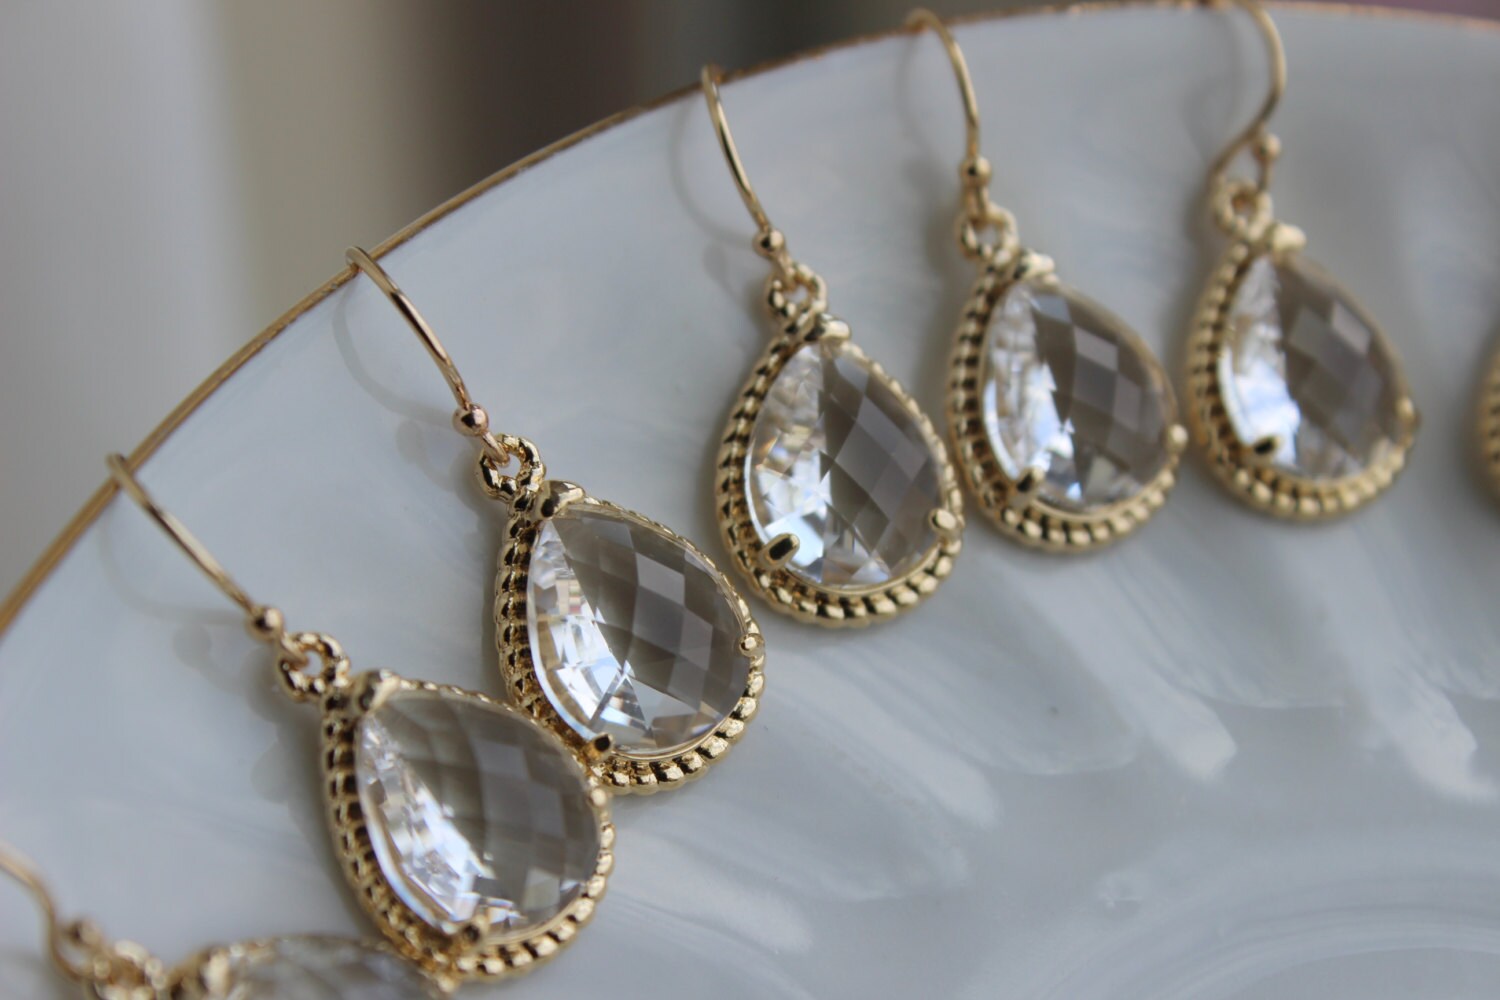 15% OFF SET OF 6 Wedding Jewelry Bridesmaid Earrings Bridesmaid Jewelry - Crystal Earrings Clear Gold Teardrop Earrings - Bridal Earrings